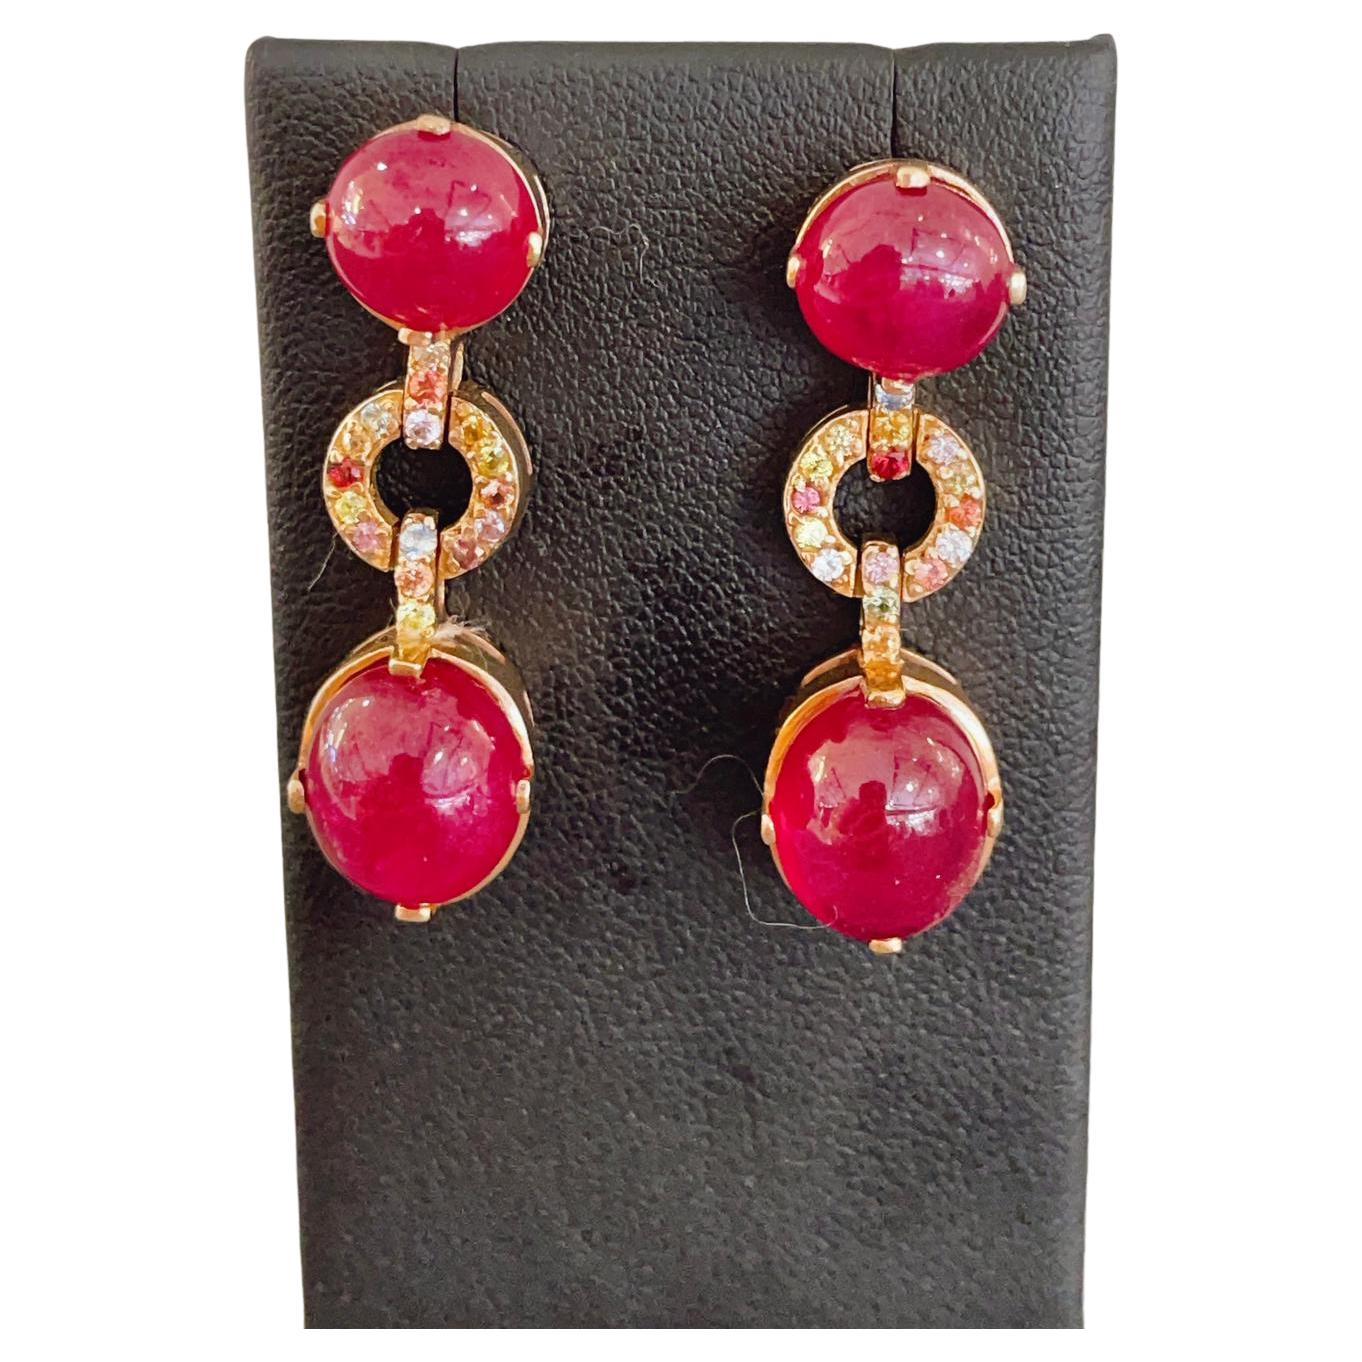 Belle Époque Bochic “Capri” Red Ruby & Fancy Sapphire Earrings Set in 18 K Gold & Silver